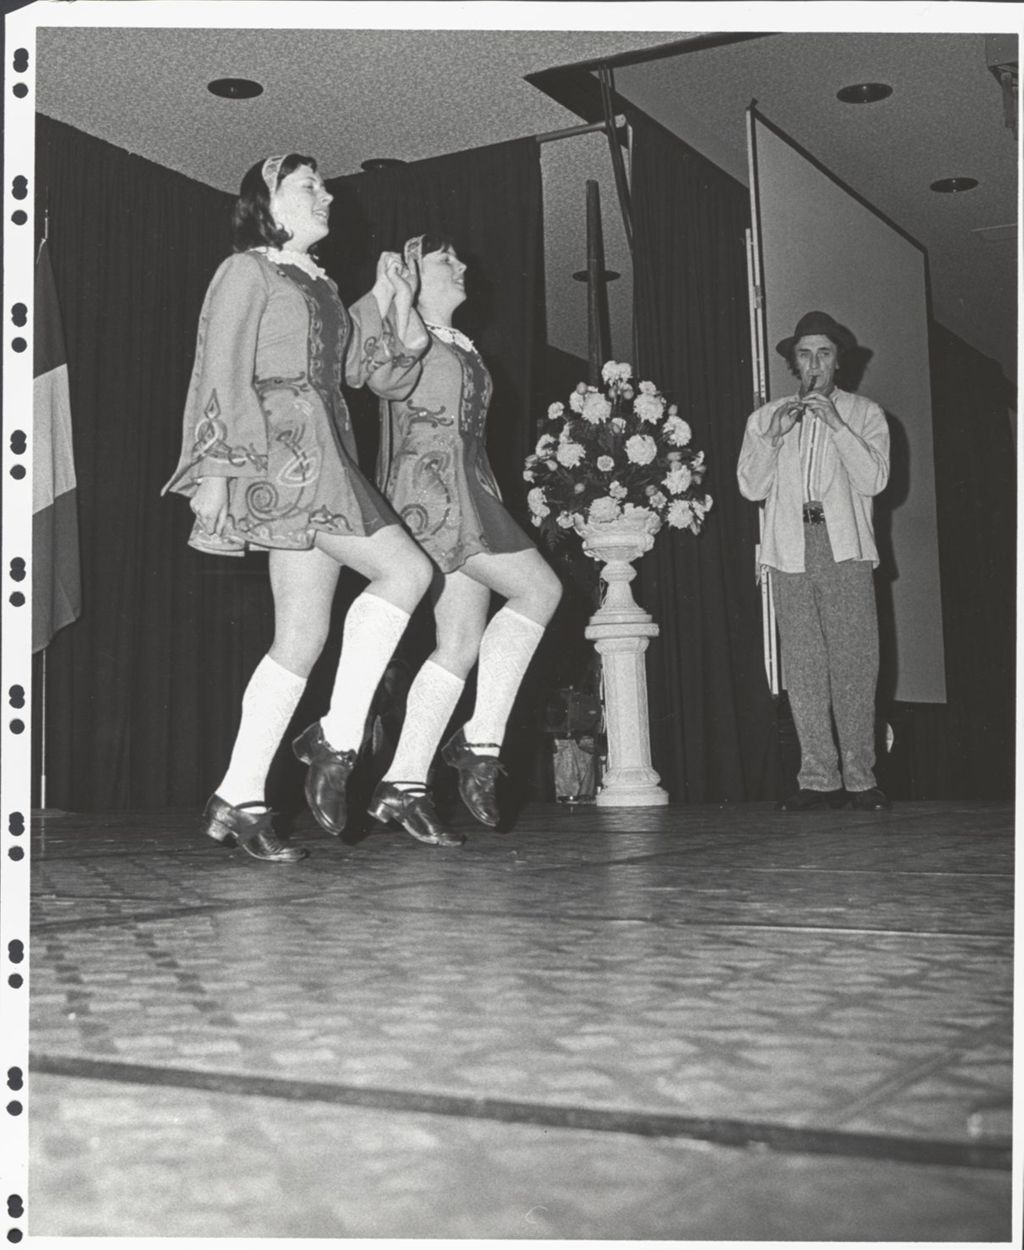 Young women performing an Irish dance